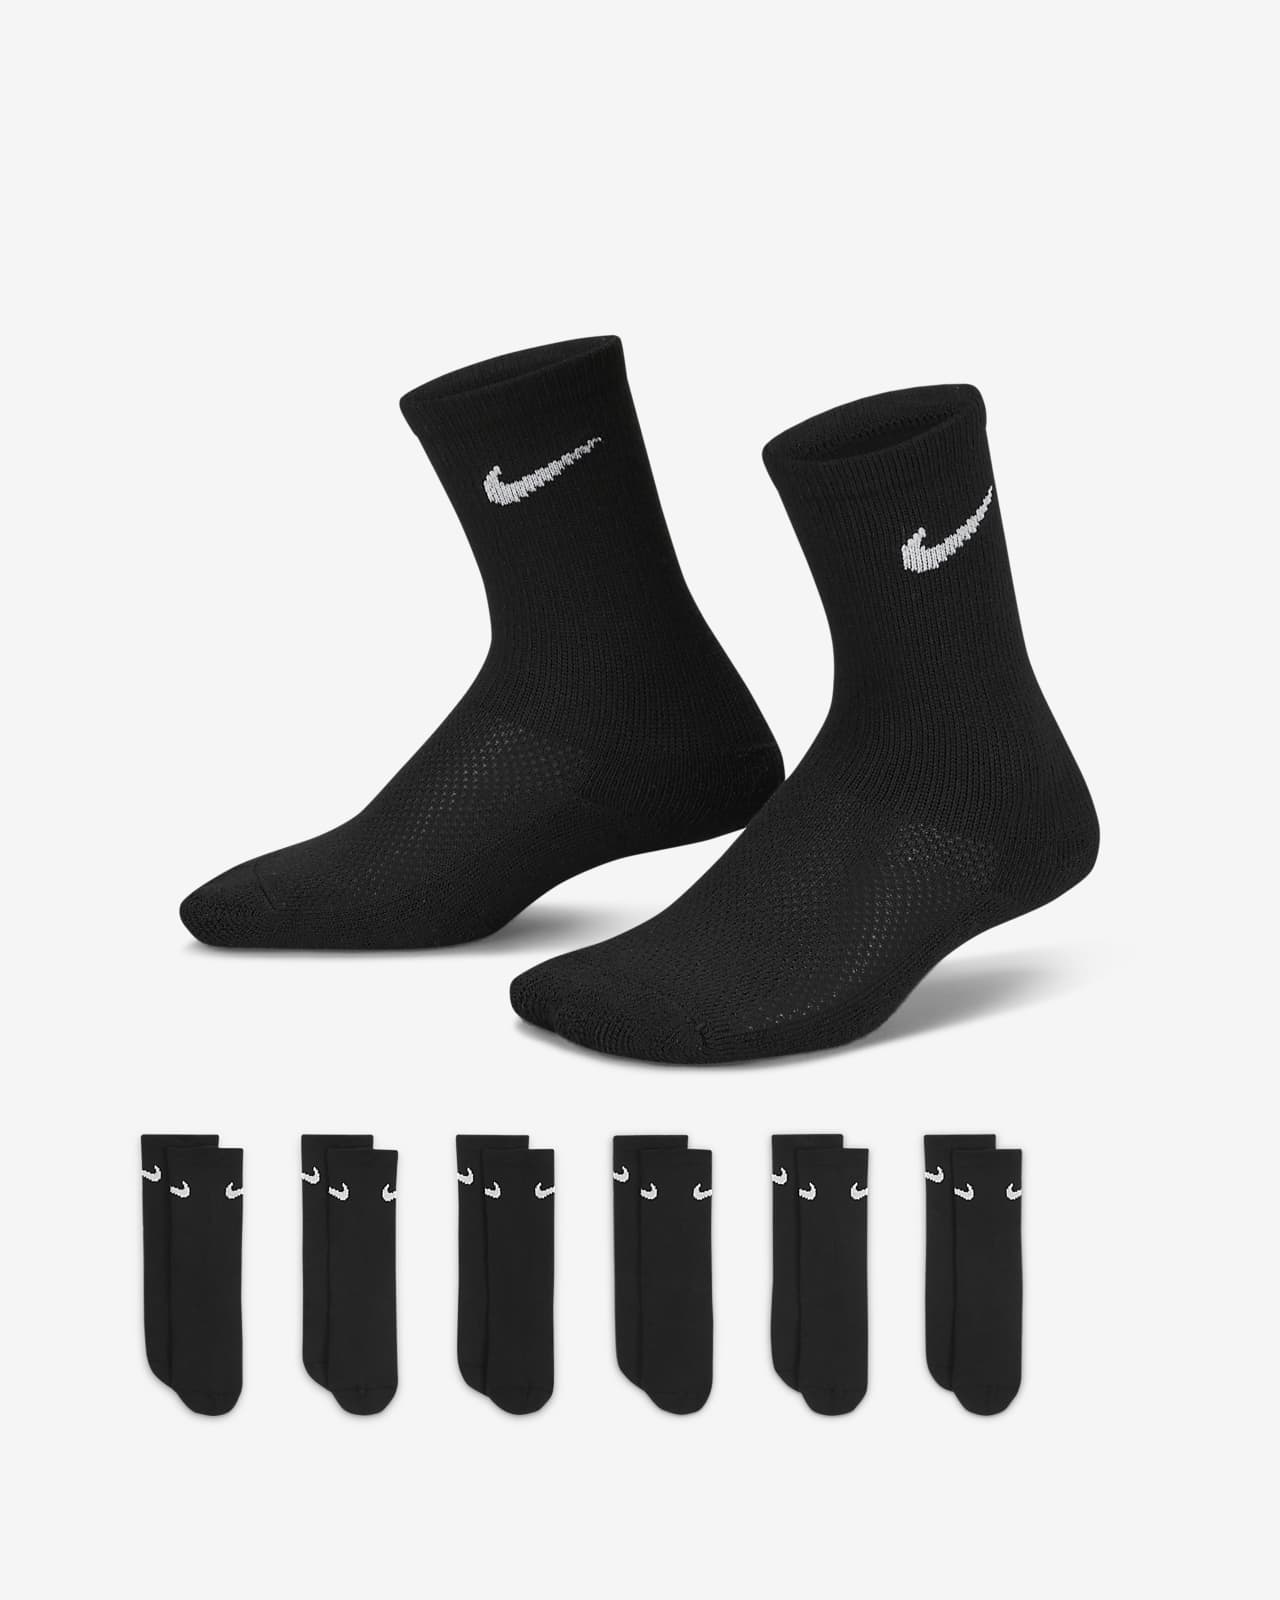 Caja de conjunto de calcetas de malla y amortiguación Nike para niños de preescolar pares). Nike.com